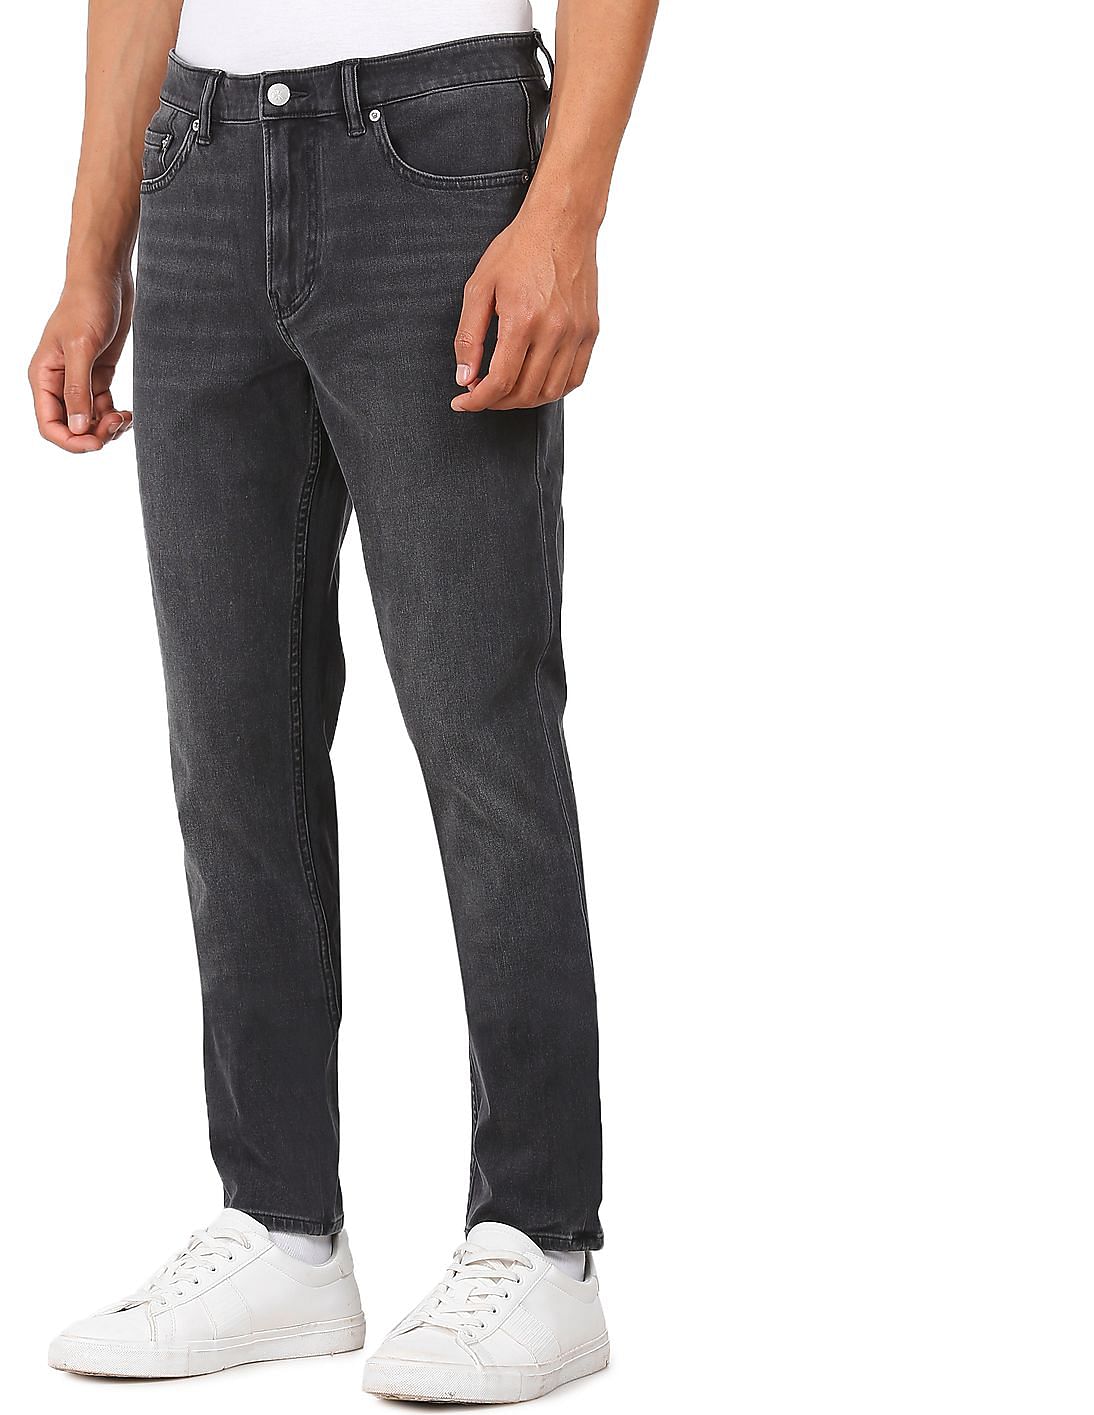 Buy Calvin Klein Men Black Mid Rise Dark Wash Jeans - NNNOW.com